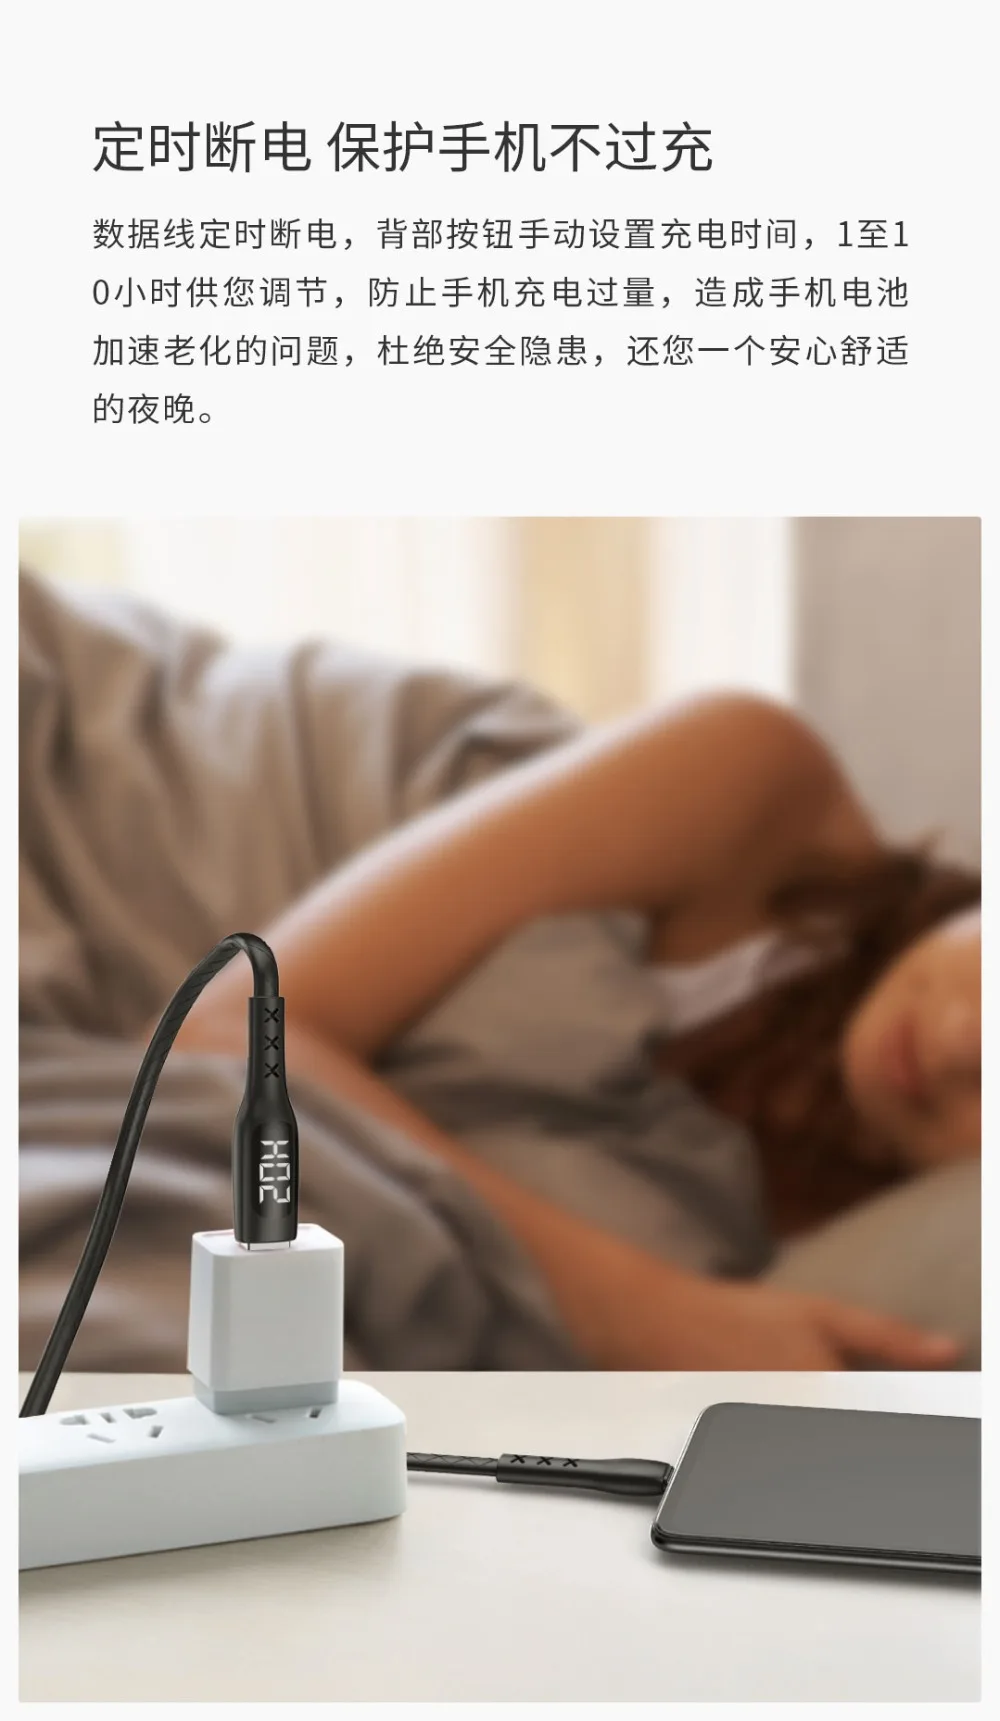 Кабель Xiaomi WSKEN type-C светодиодный дисплей цифровой кабель для передачи данных type-C 1,2 м для смартфонов samsung S9 S8 Xiaomi6 huawei